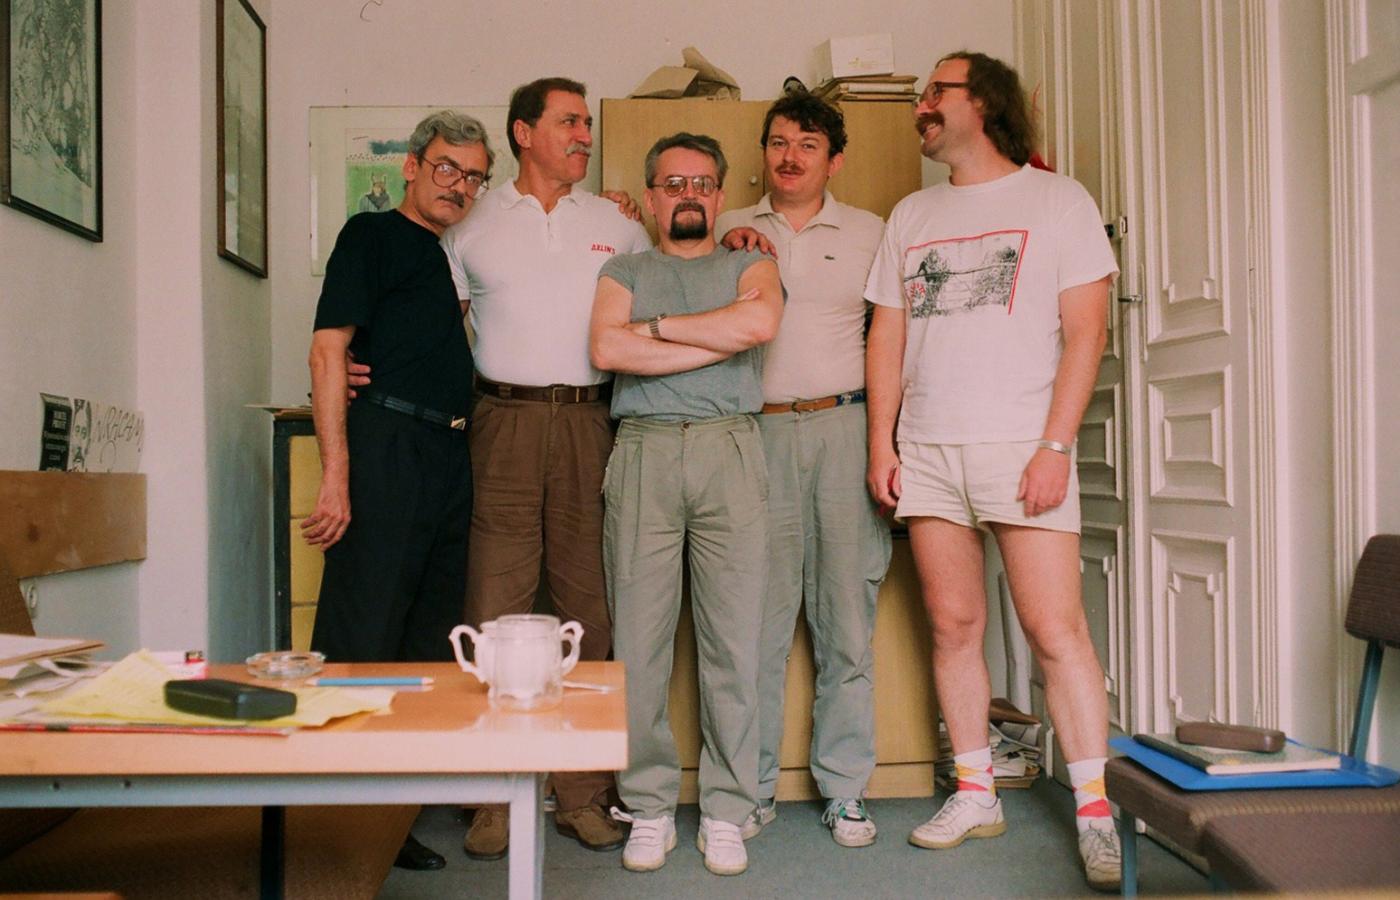 SILNA GRUPA - od lewej Andrzej Sapkowski, Lech Jęczmyk, Bogusław Polch, Maciej Parowski i Marek Oramus w 1992 r.